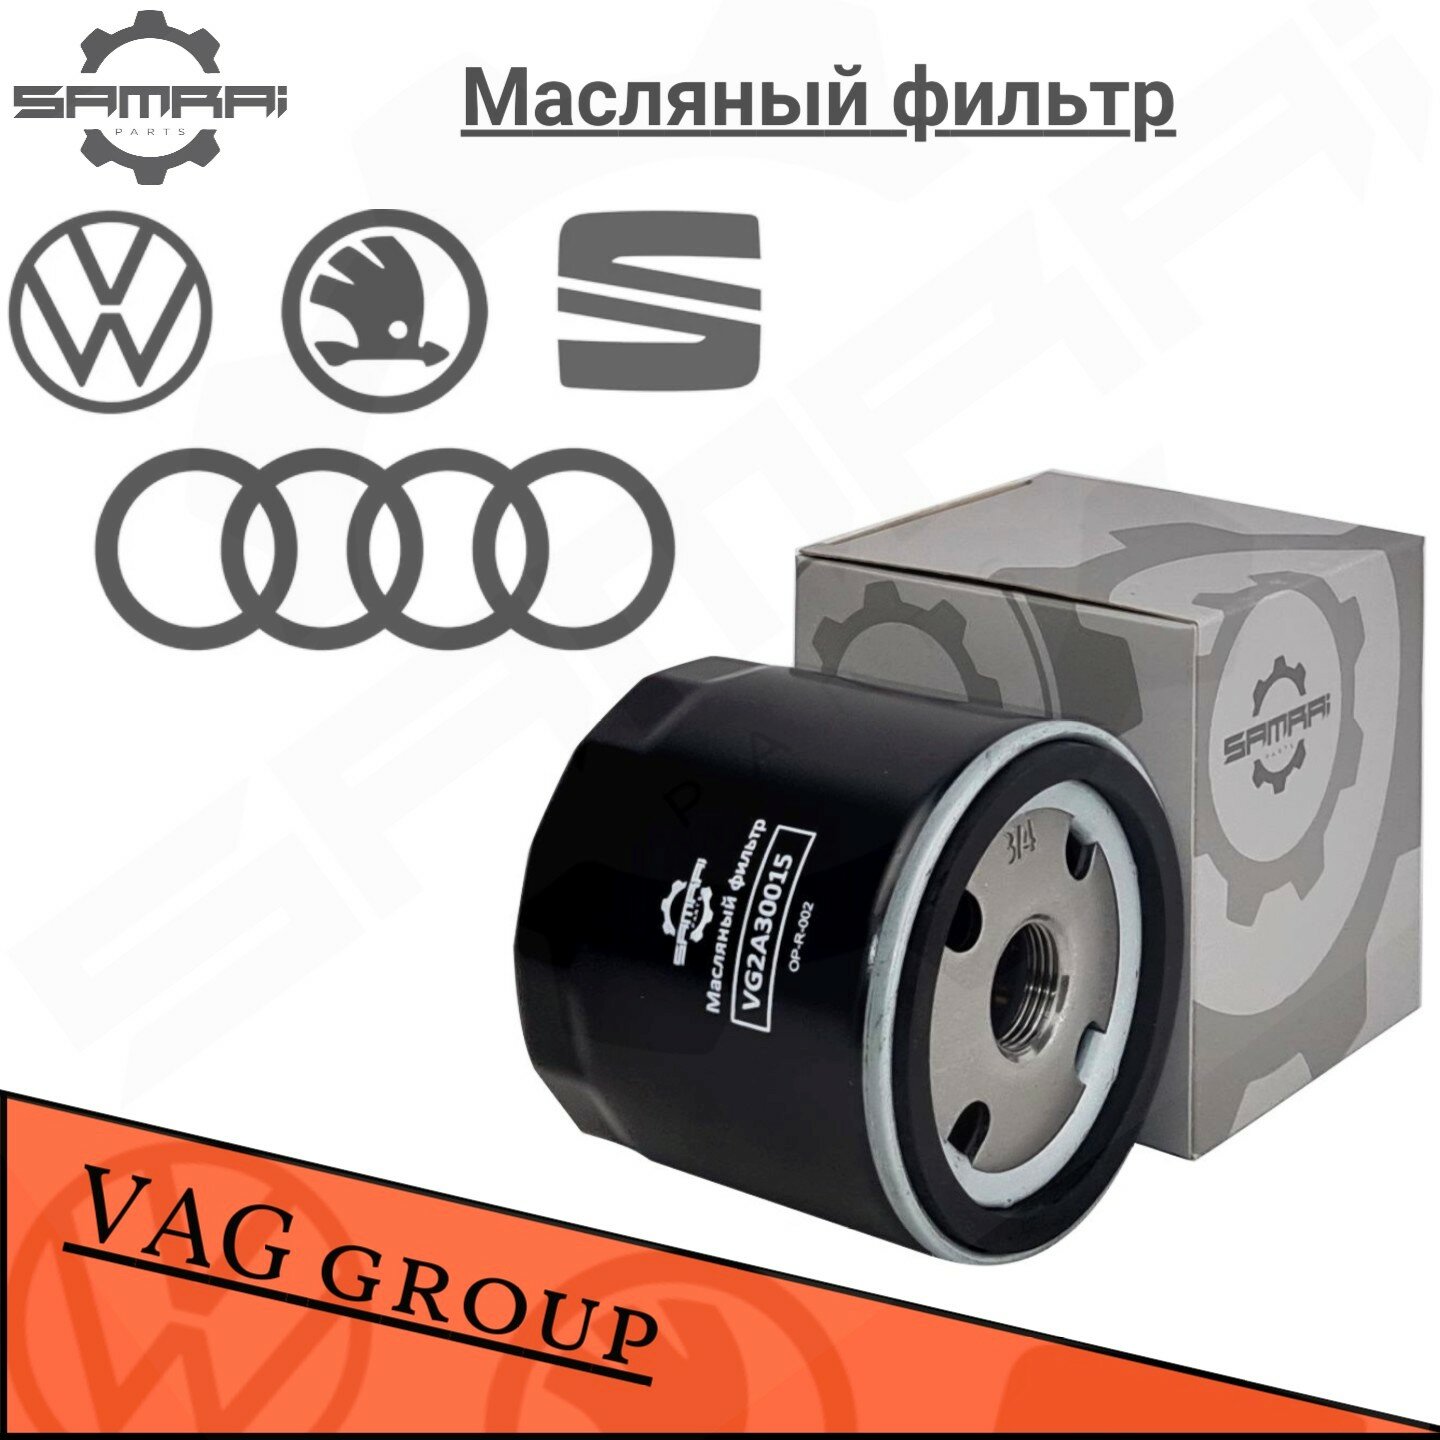 Масляный фильтр Samrai Parts для Audi, Volkswagen, Skoda VG2A30015, 04E 115 561 H, W 712/95, 51003A2